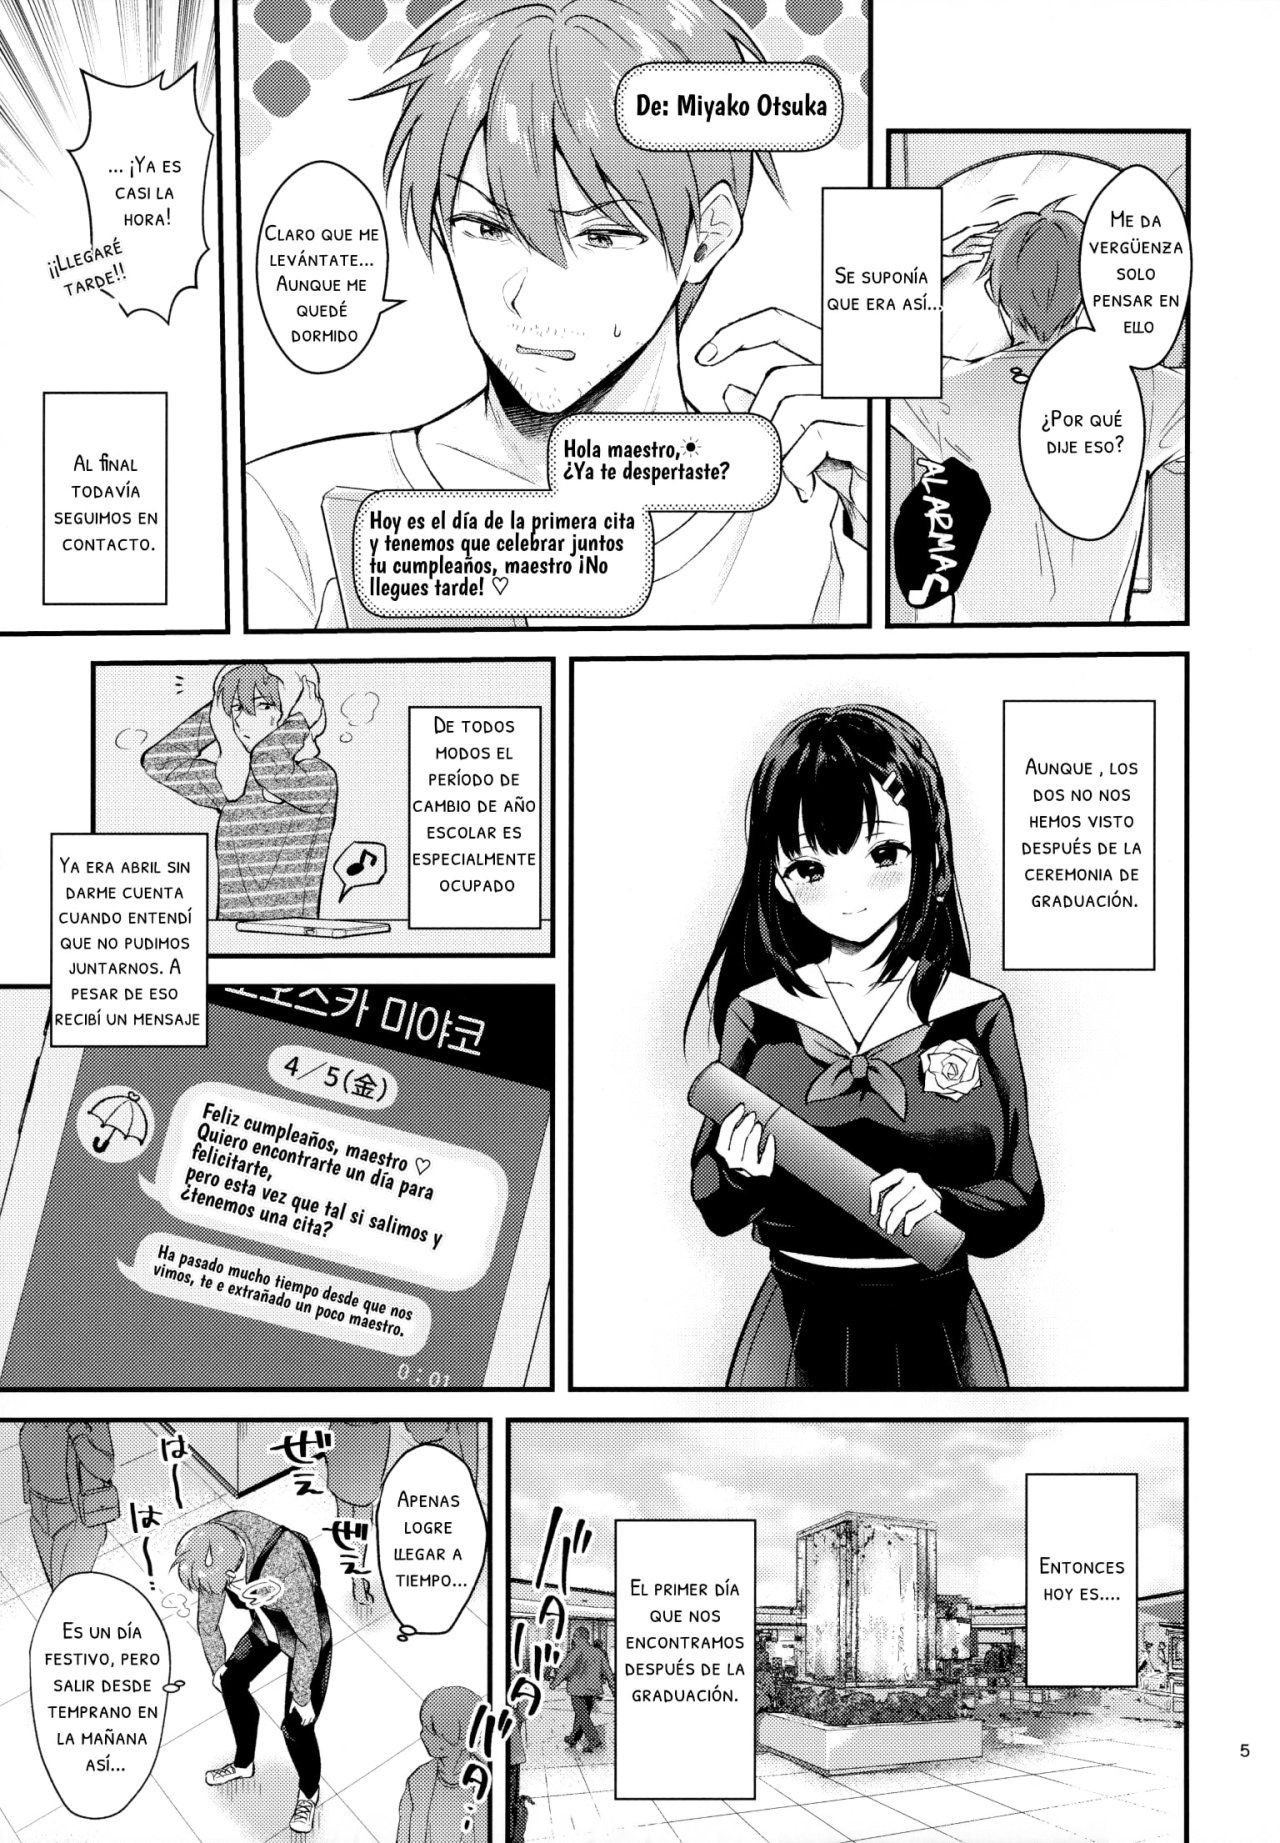 Sunshower-JK Miyako no Valentine Manga 3 - 3